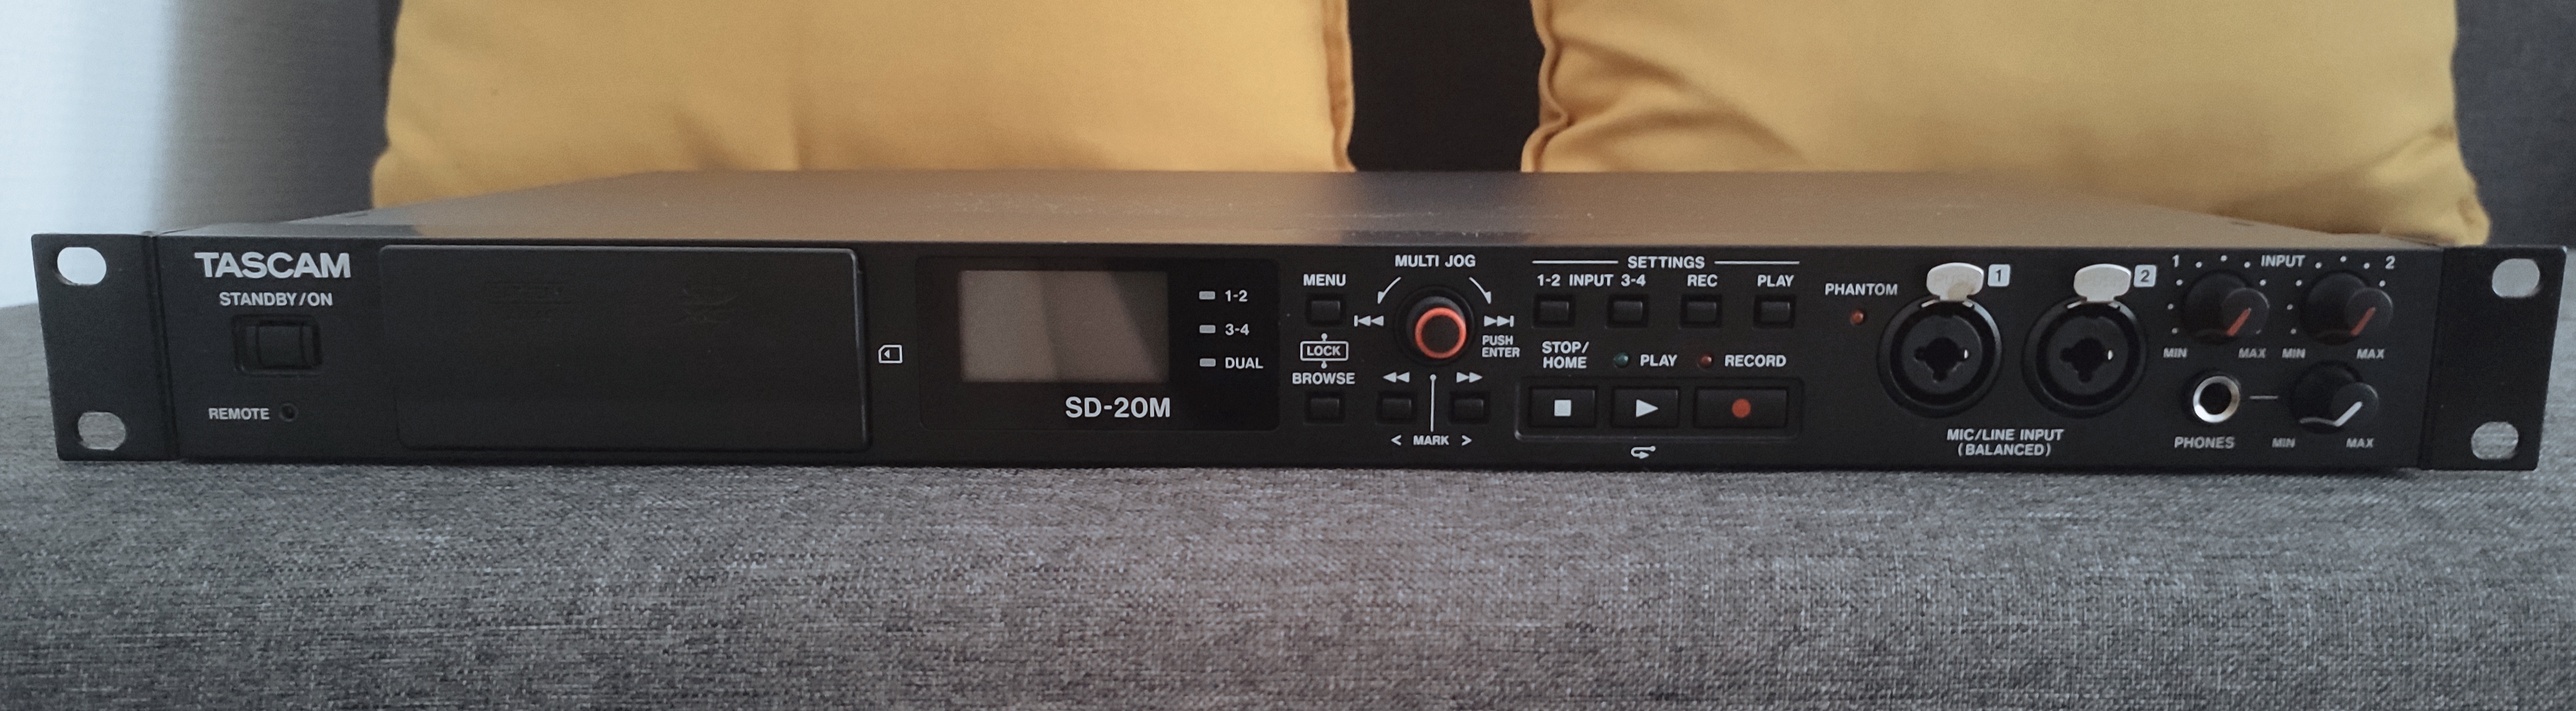 SD-20M - Tascam SD-20M - Audiofanzine